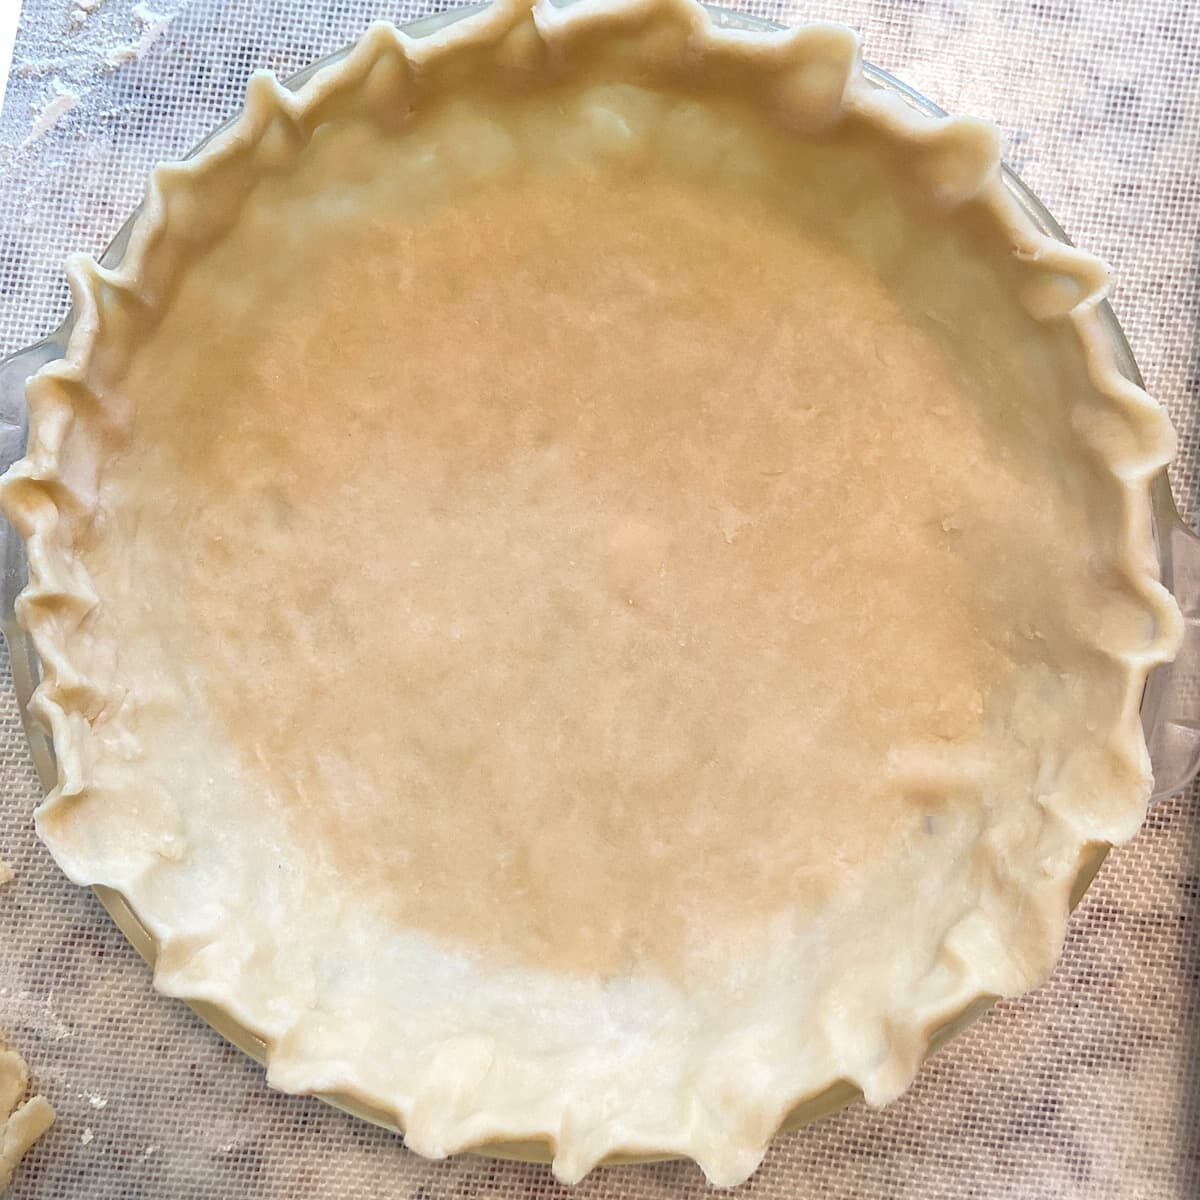 crimped pie crust dough in dish